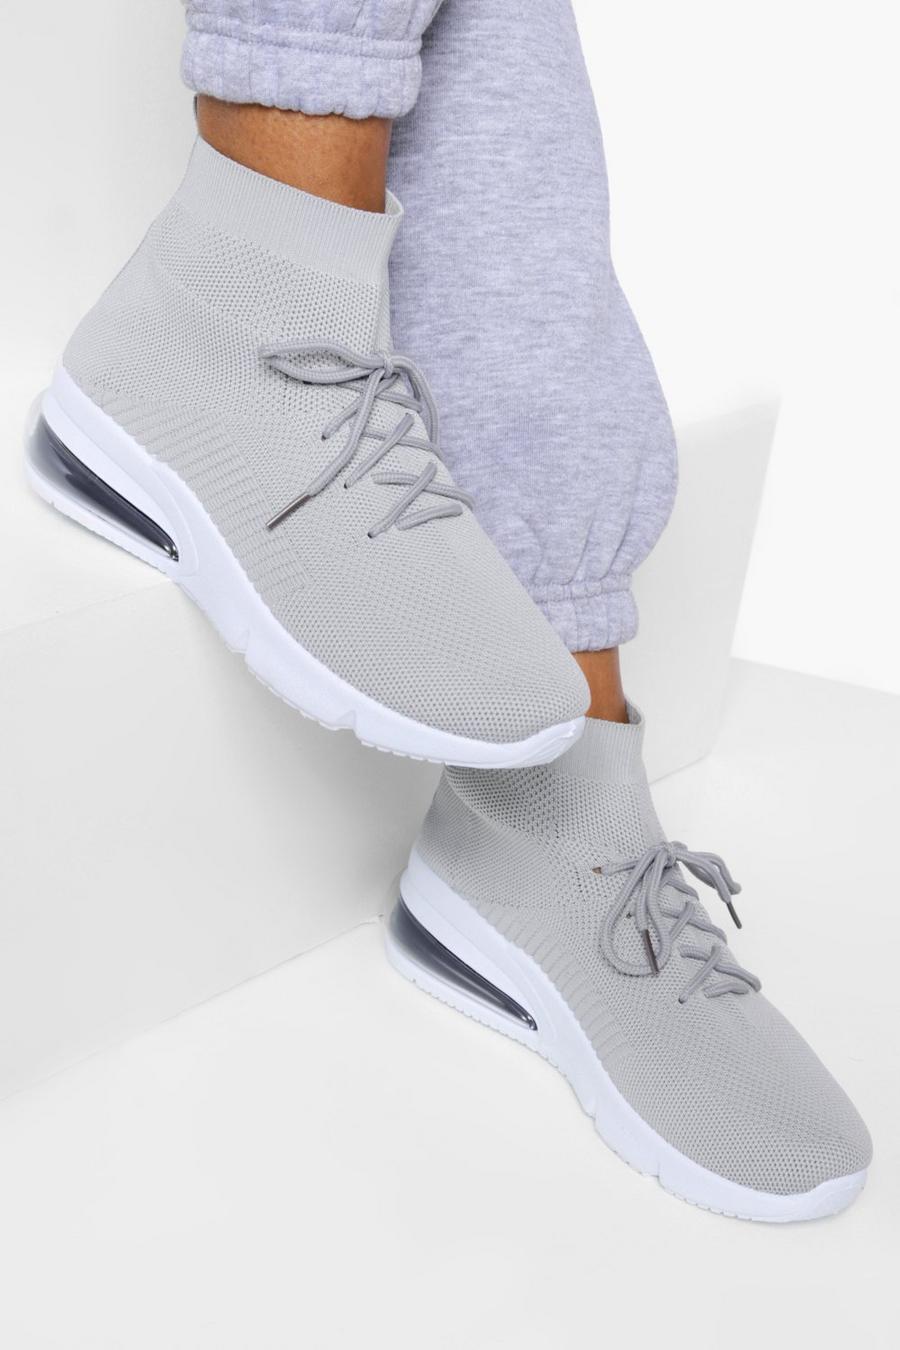 Scarpe da ginnastica a calzata ampia alla caviglia con lacci, Grey gris